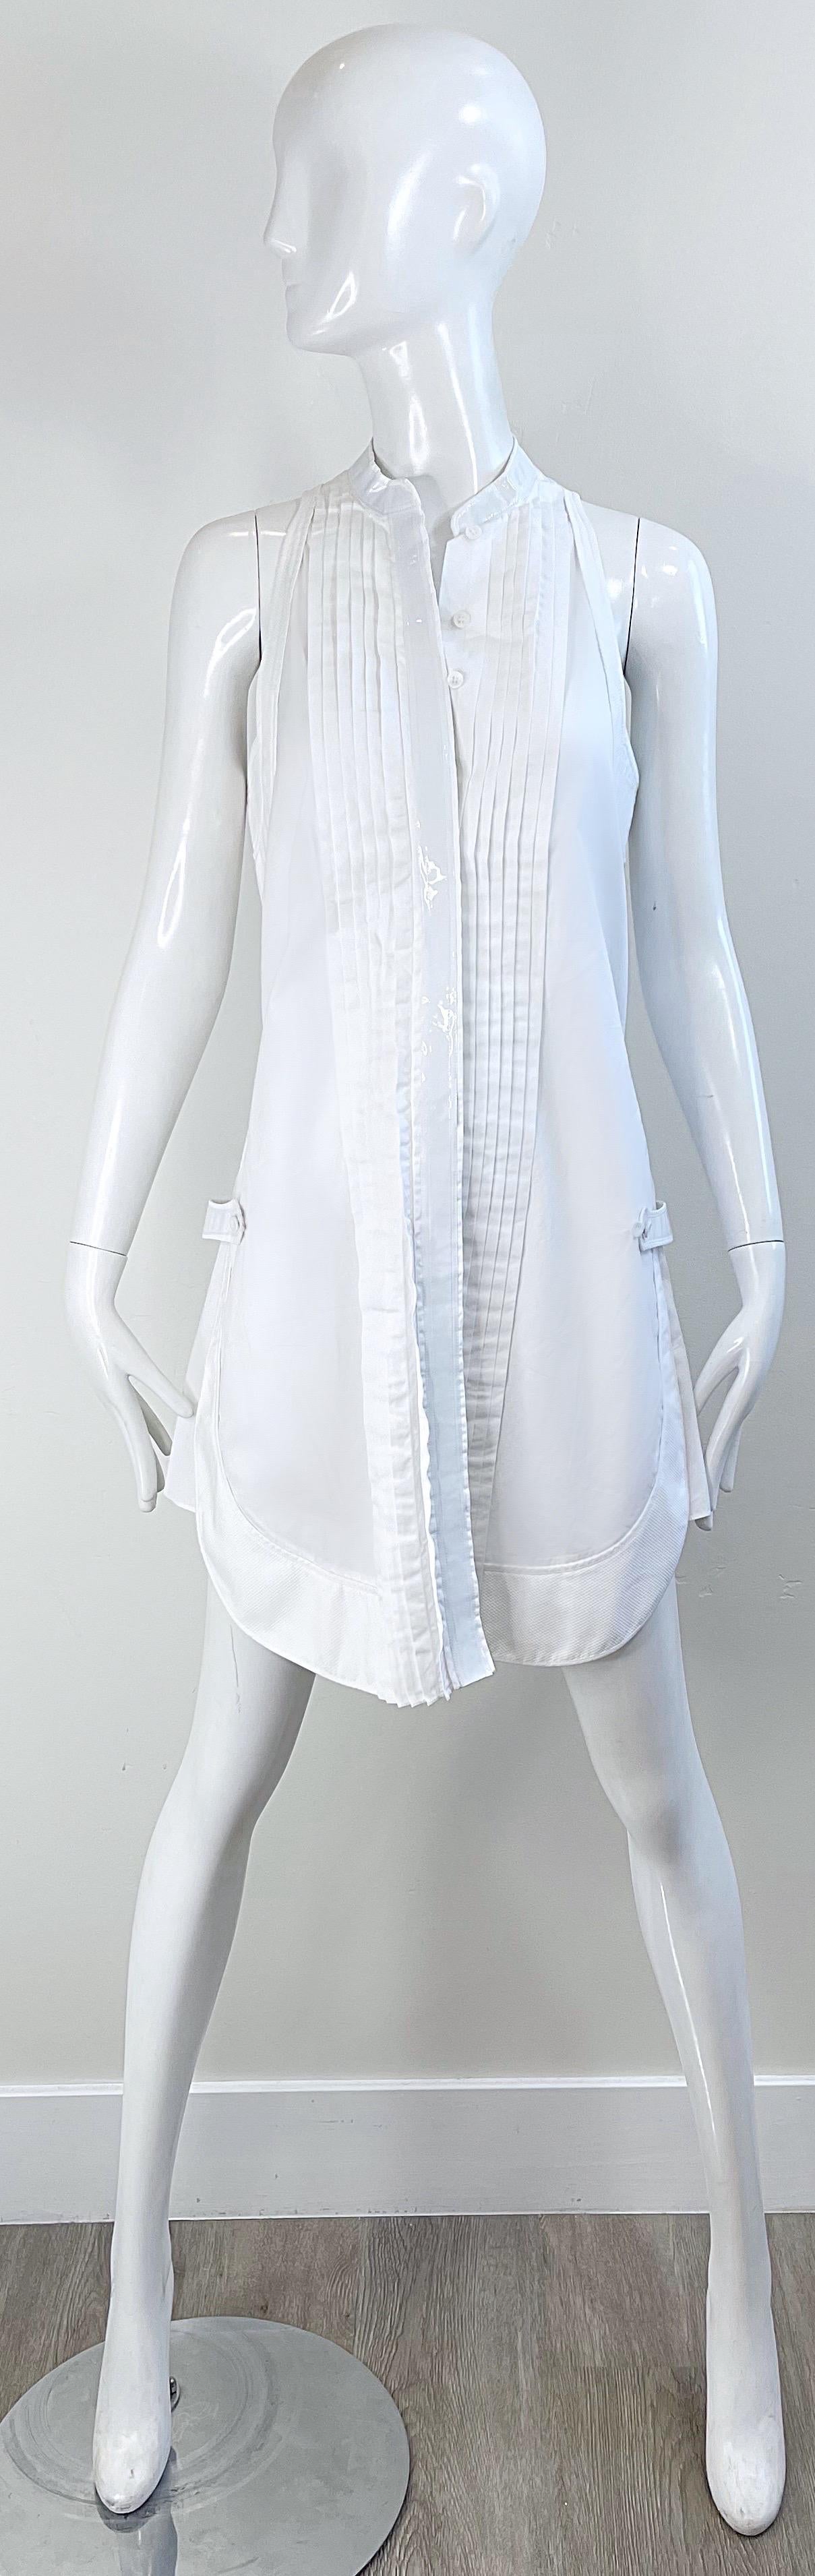 Balenciaga Spring 2007 by Nicolas Ghesquiere Size 38 / 8 White Tuxedo Dress  For Sale 8